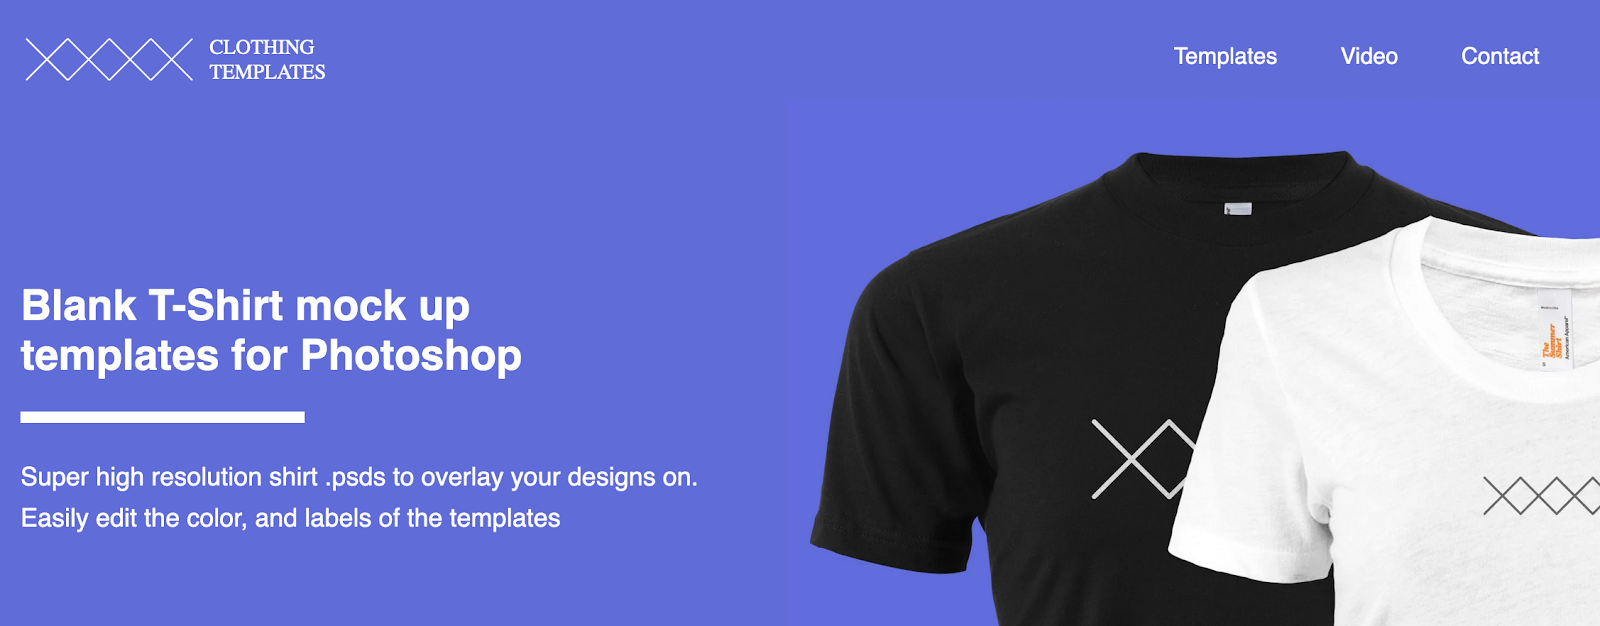 Clothing templates ist eine Website für T-Shirt Vorlagen und T-Shirt Mockups.